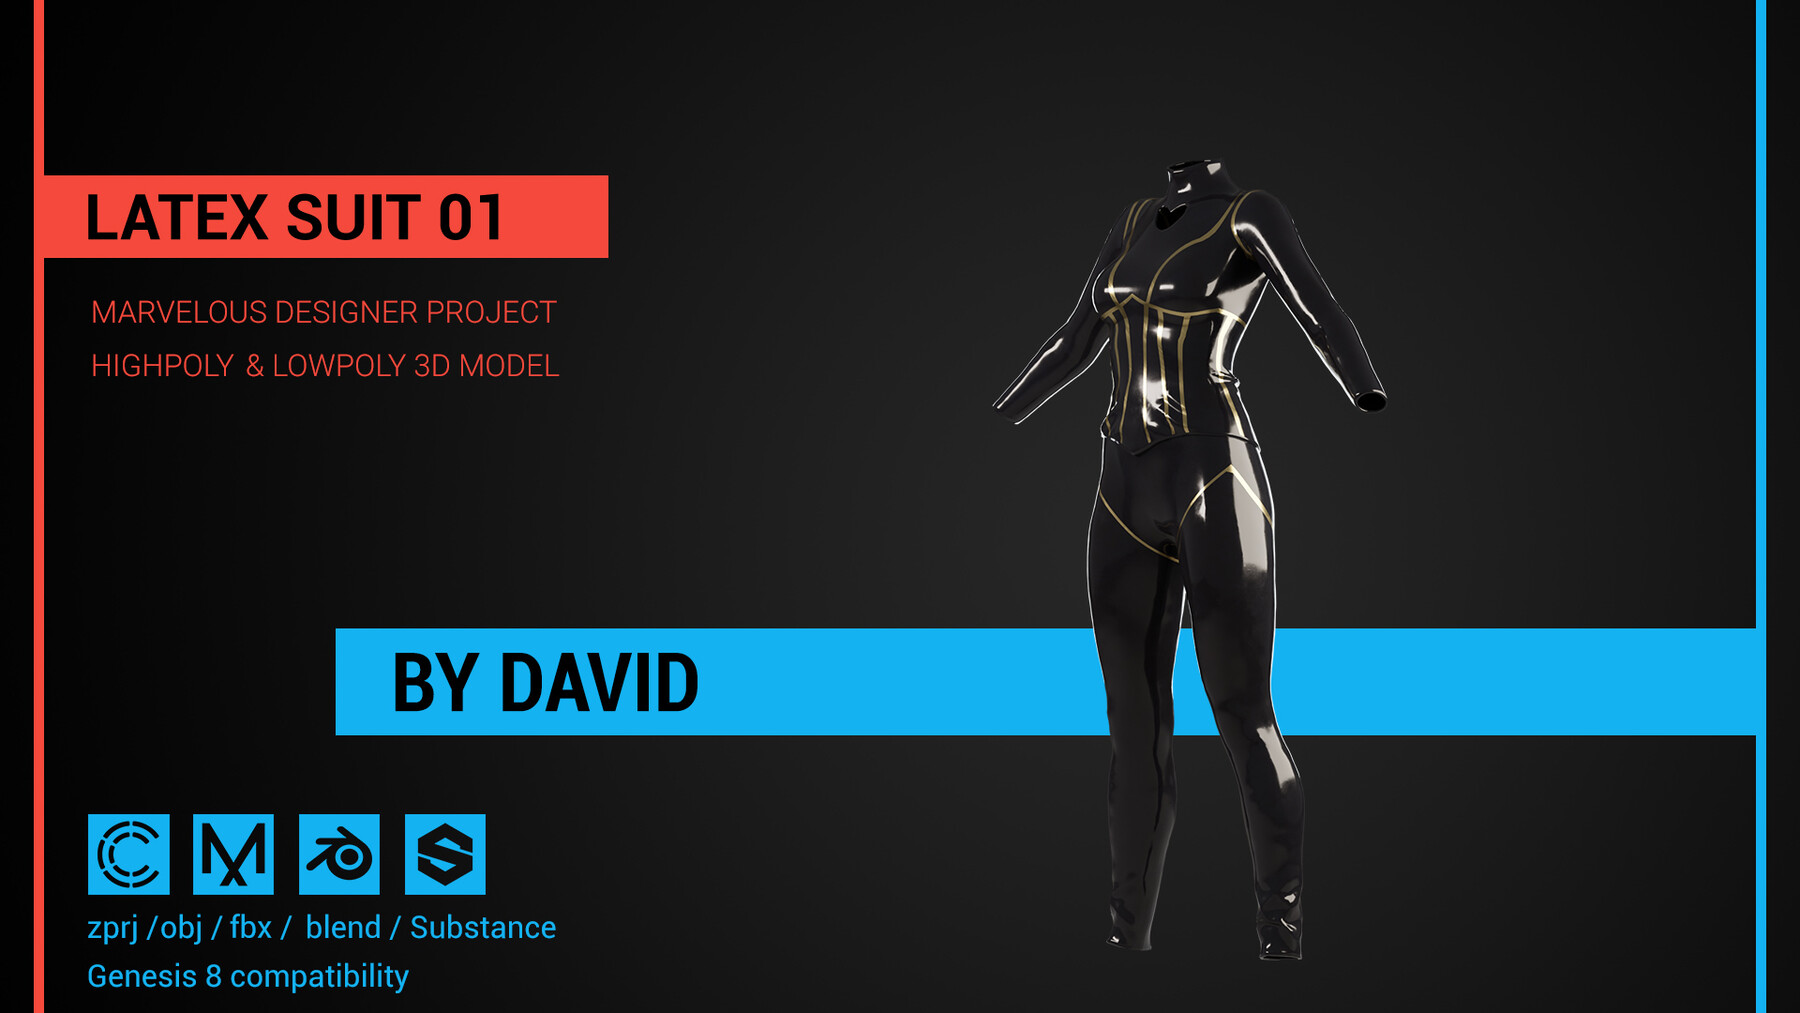 Latex suit 01 - Marvelous Designer, CLO project.